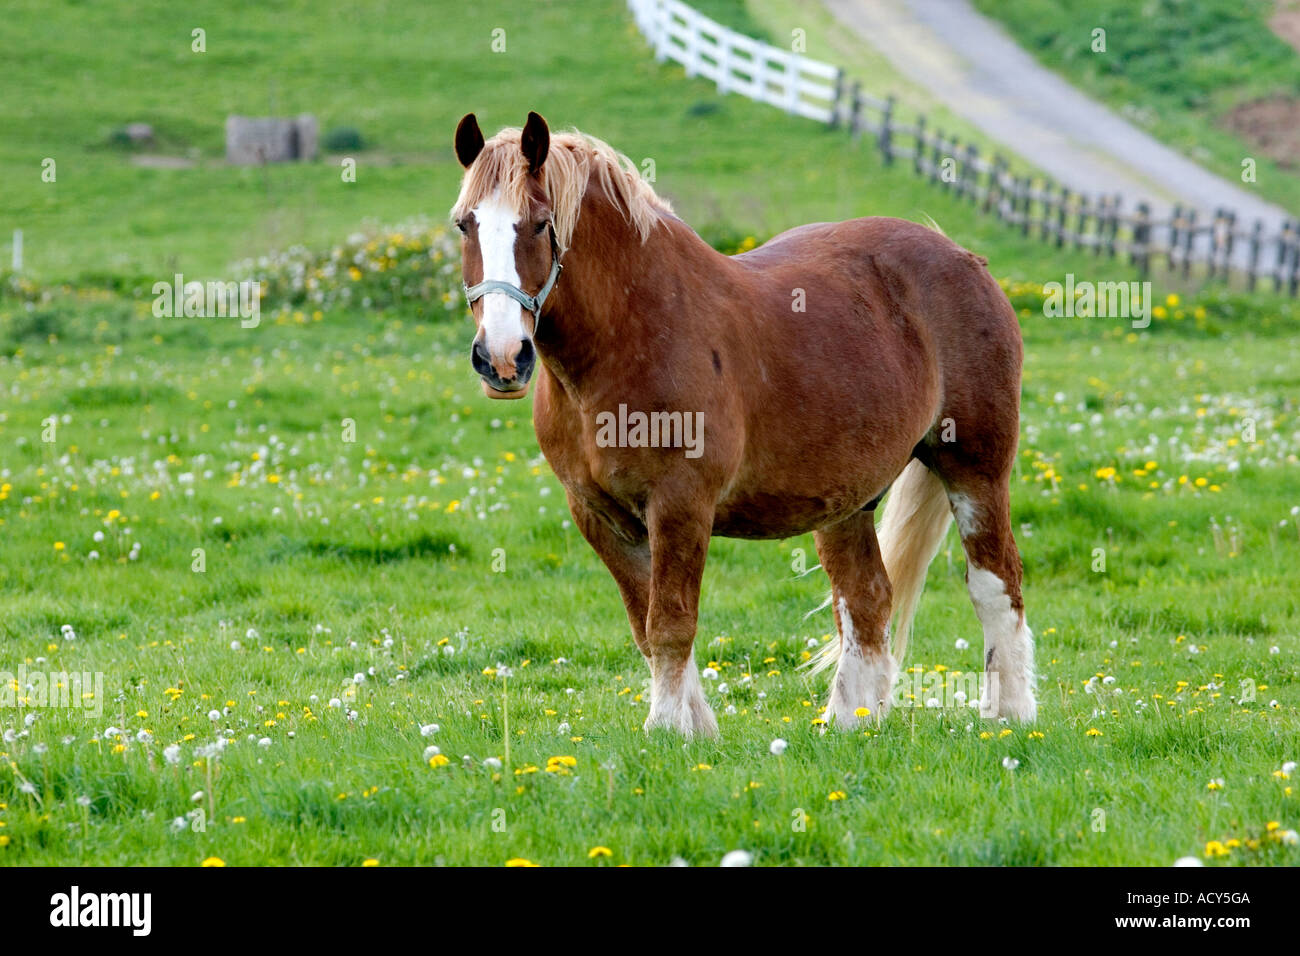 A farm scene with horses near Berlin, Ohio. Stock Photo